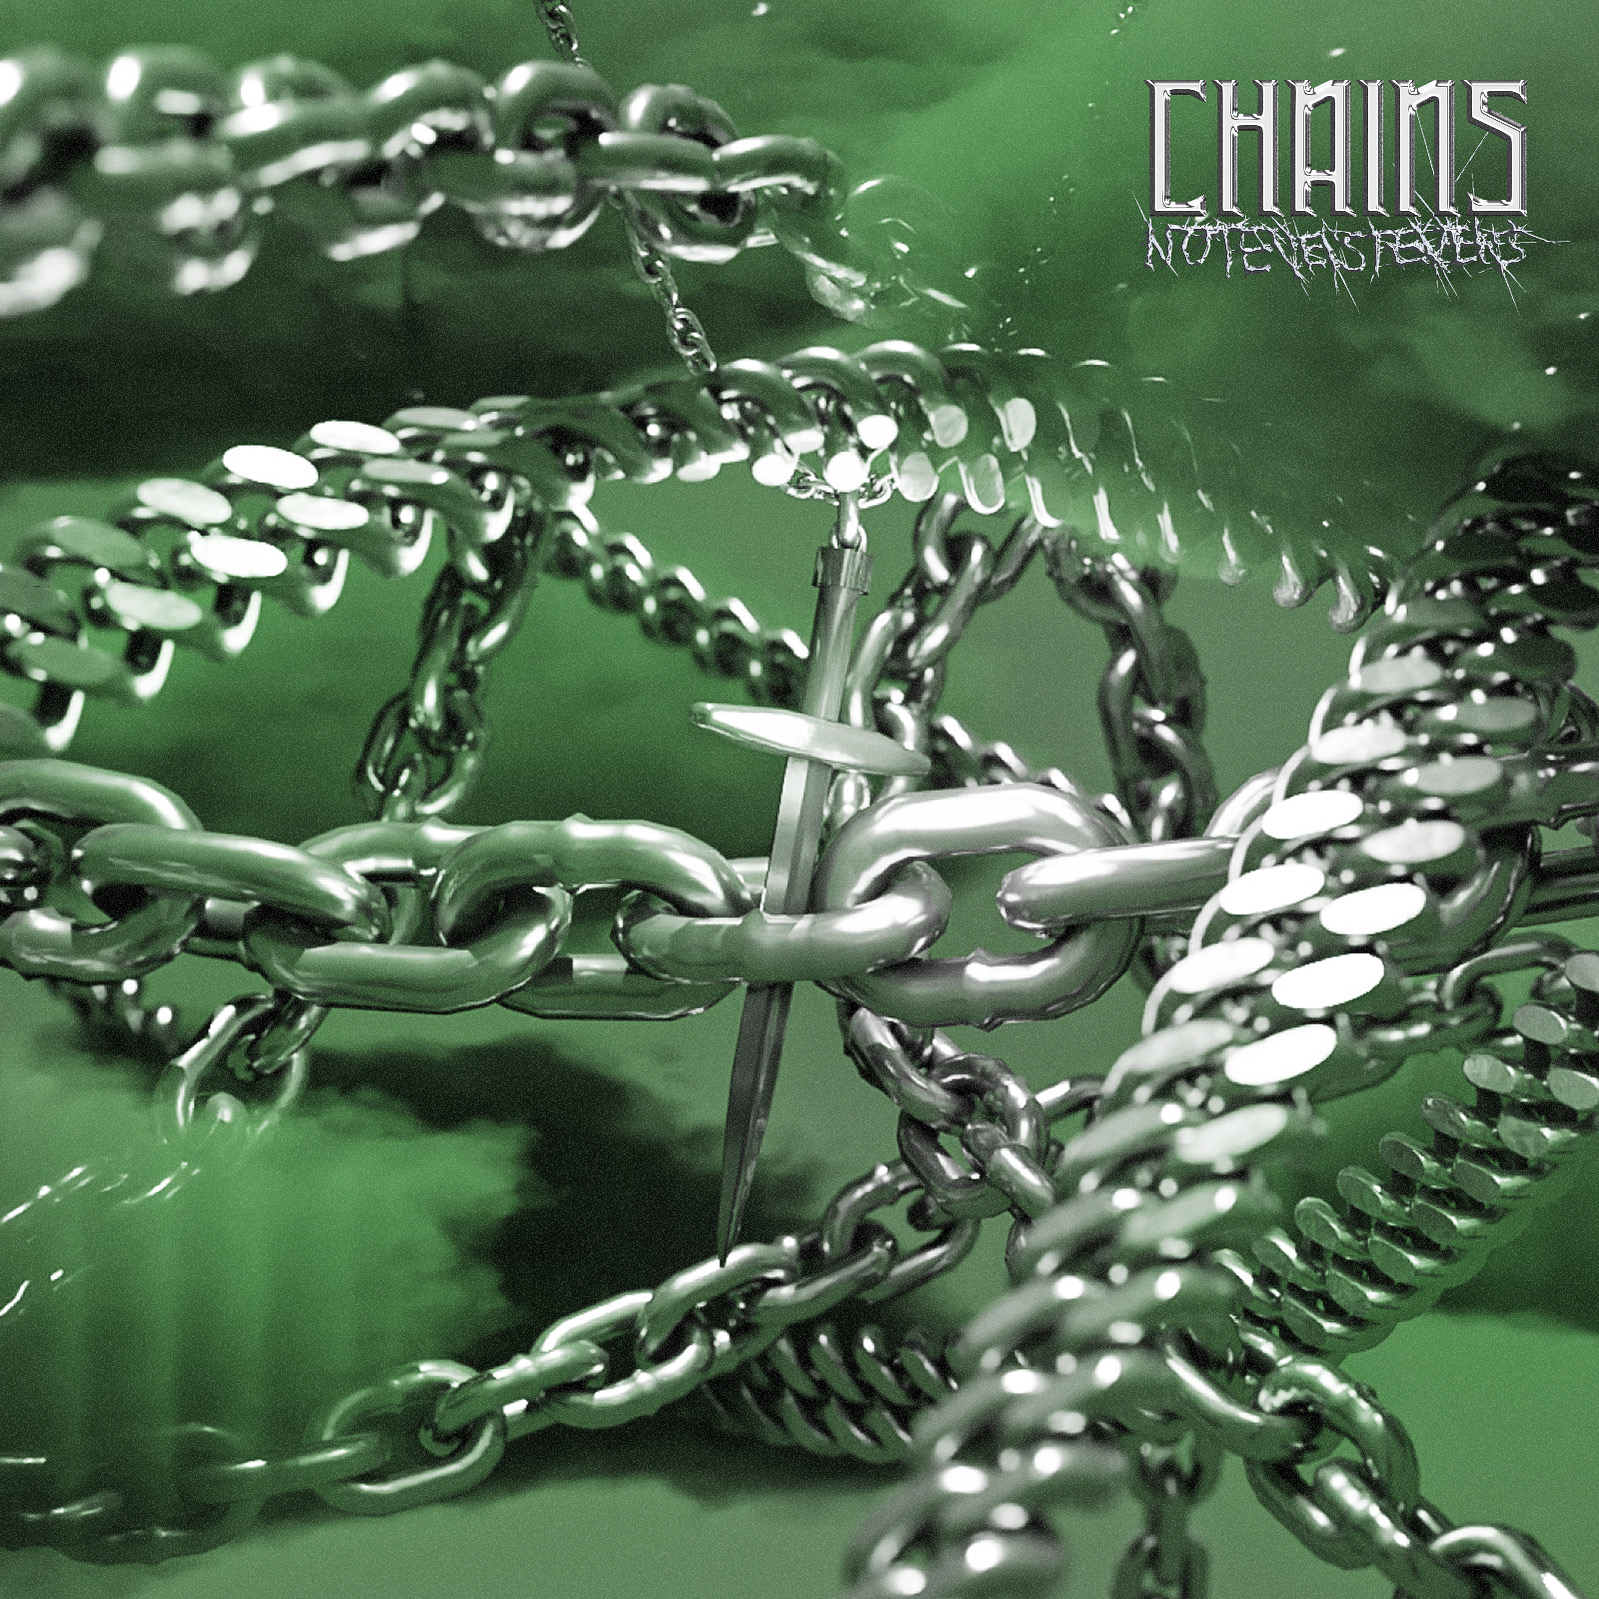 notevenstevens - 'Chains'